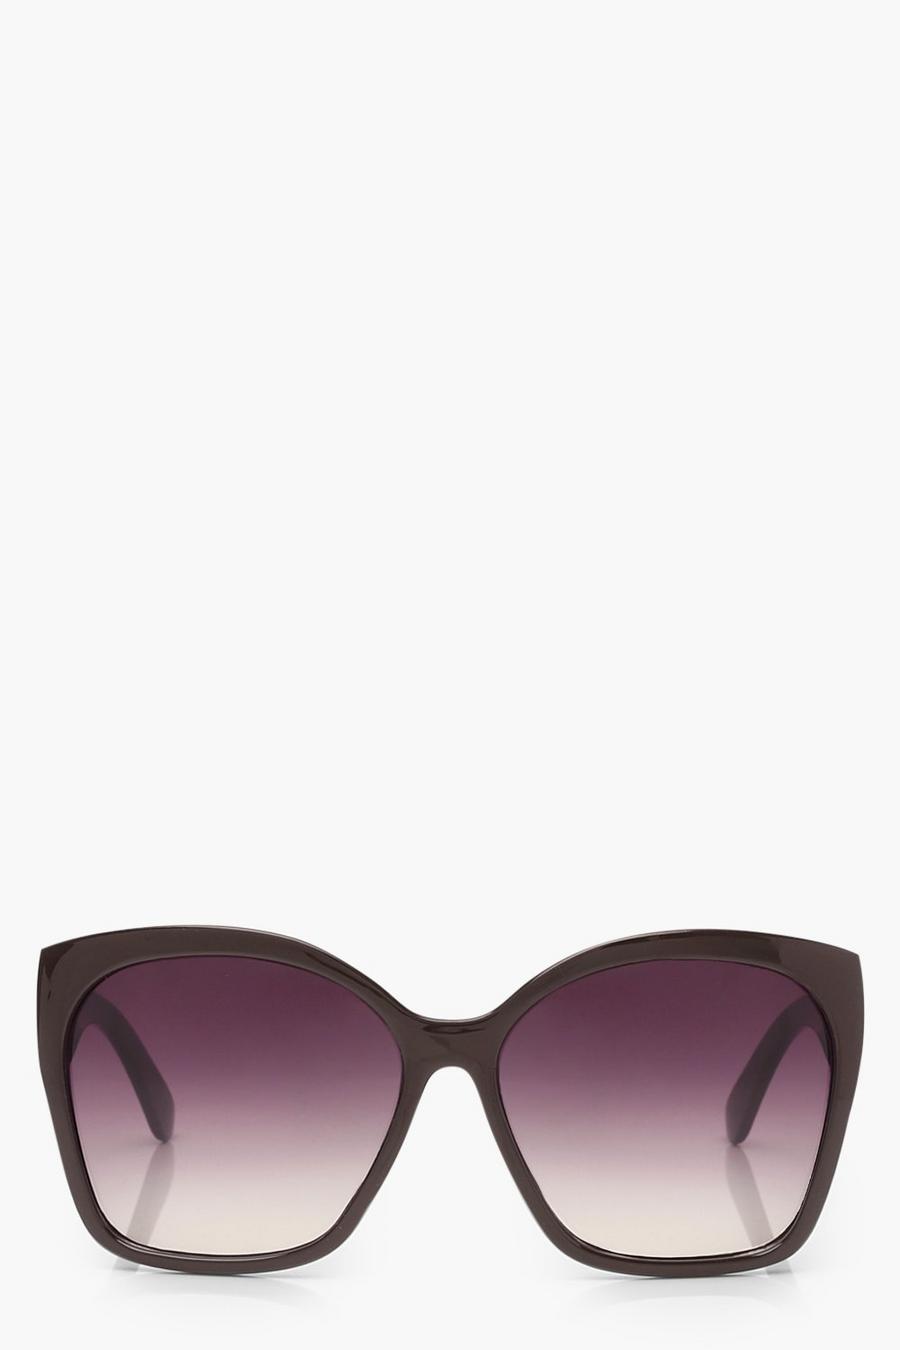 Klassische Oversize Sonnenbrille, Schokoladenbraun marron